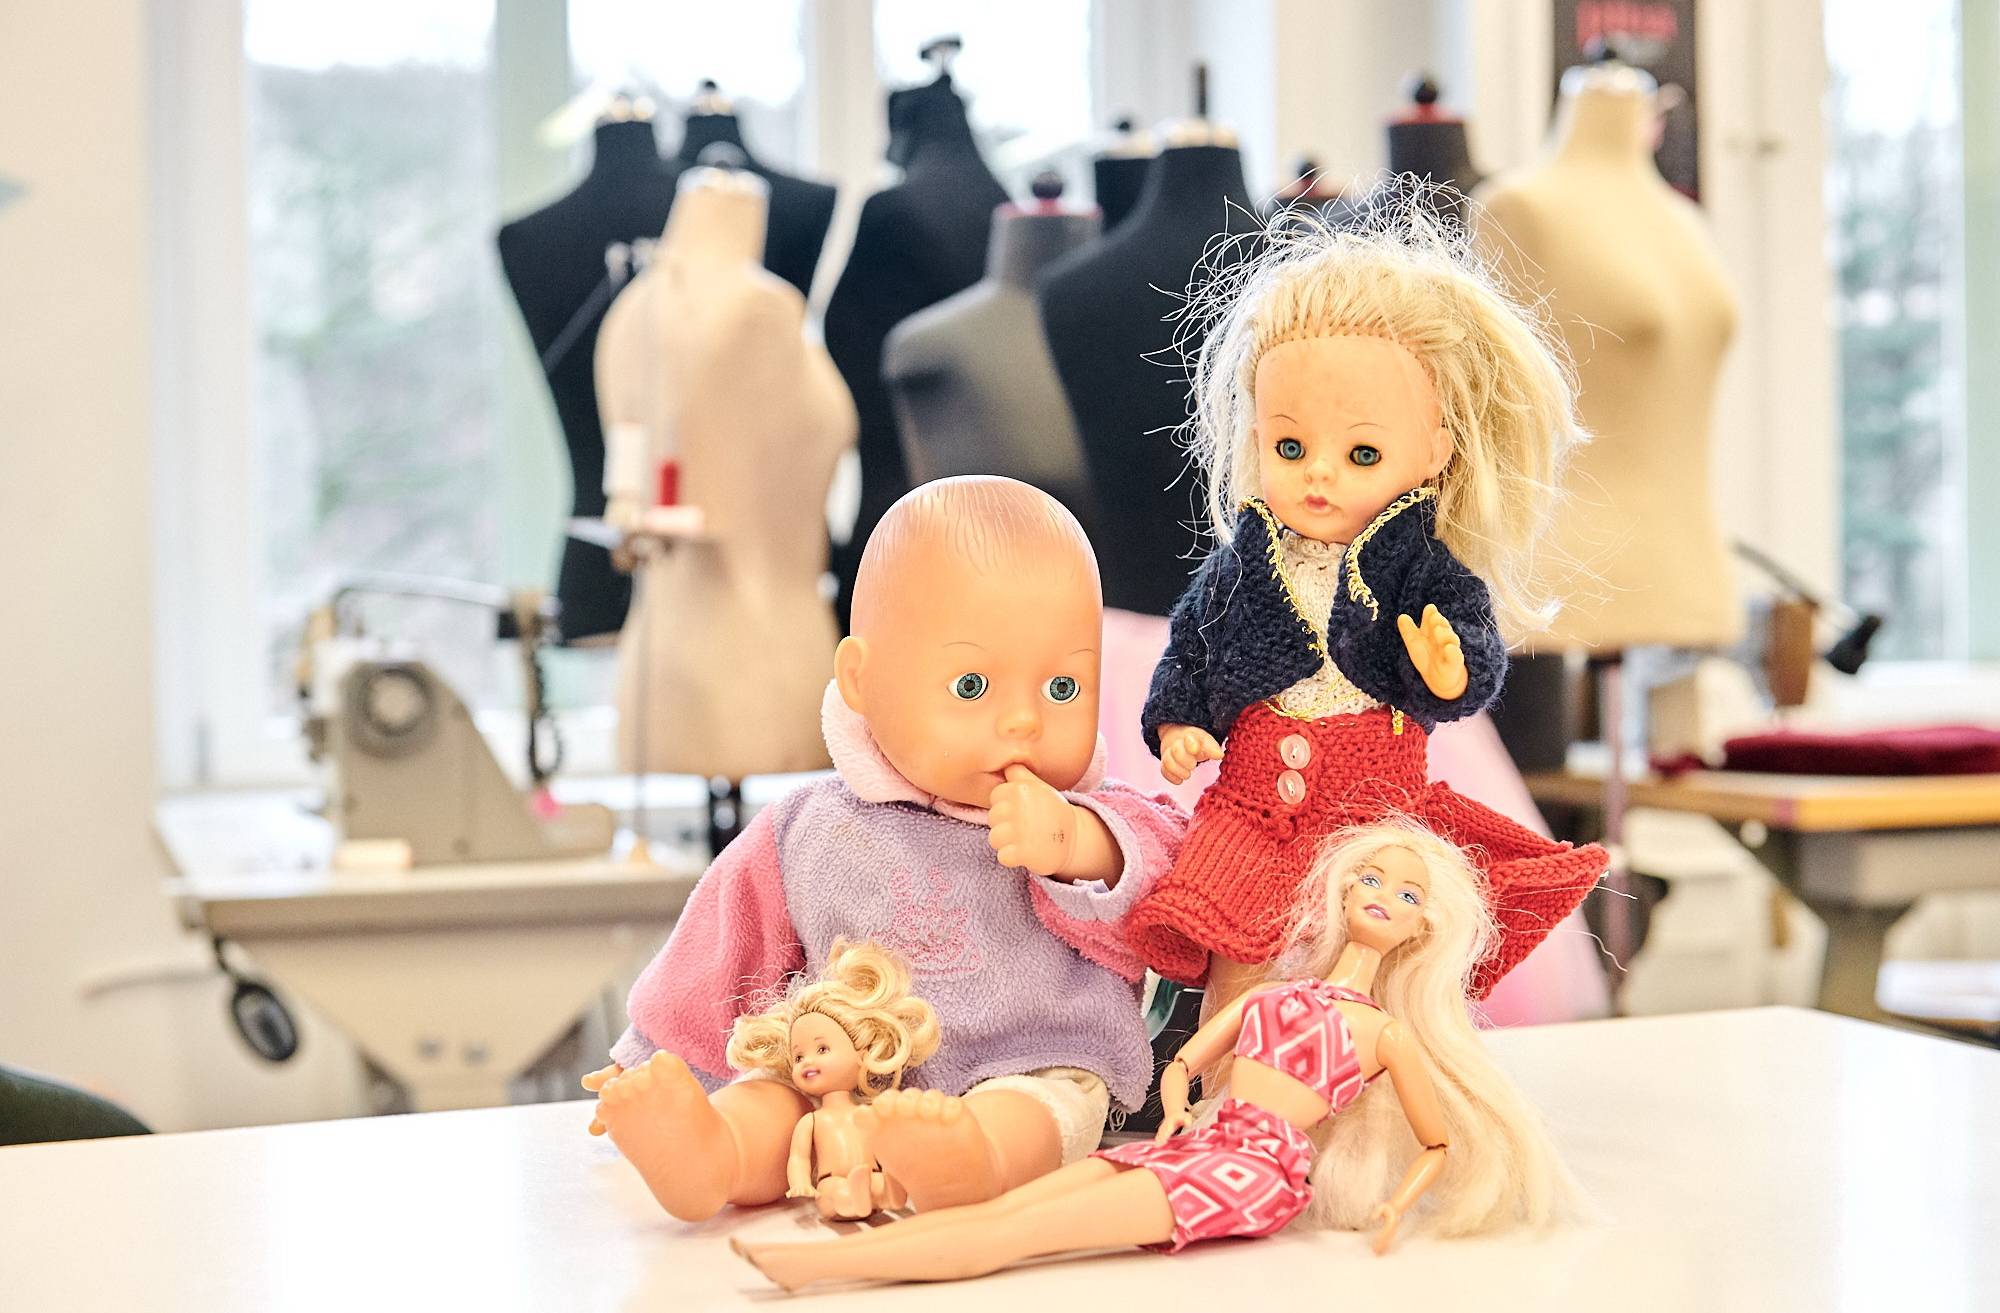 Das Wuppertaler Schauspiel sucht Puppen